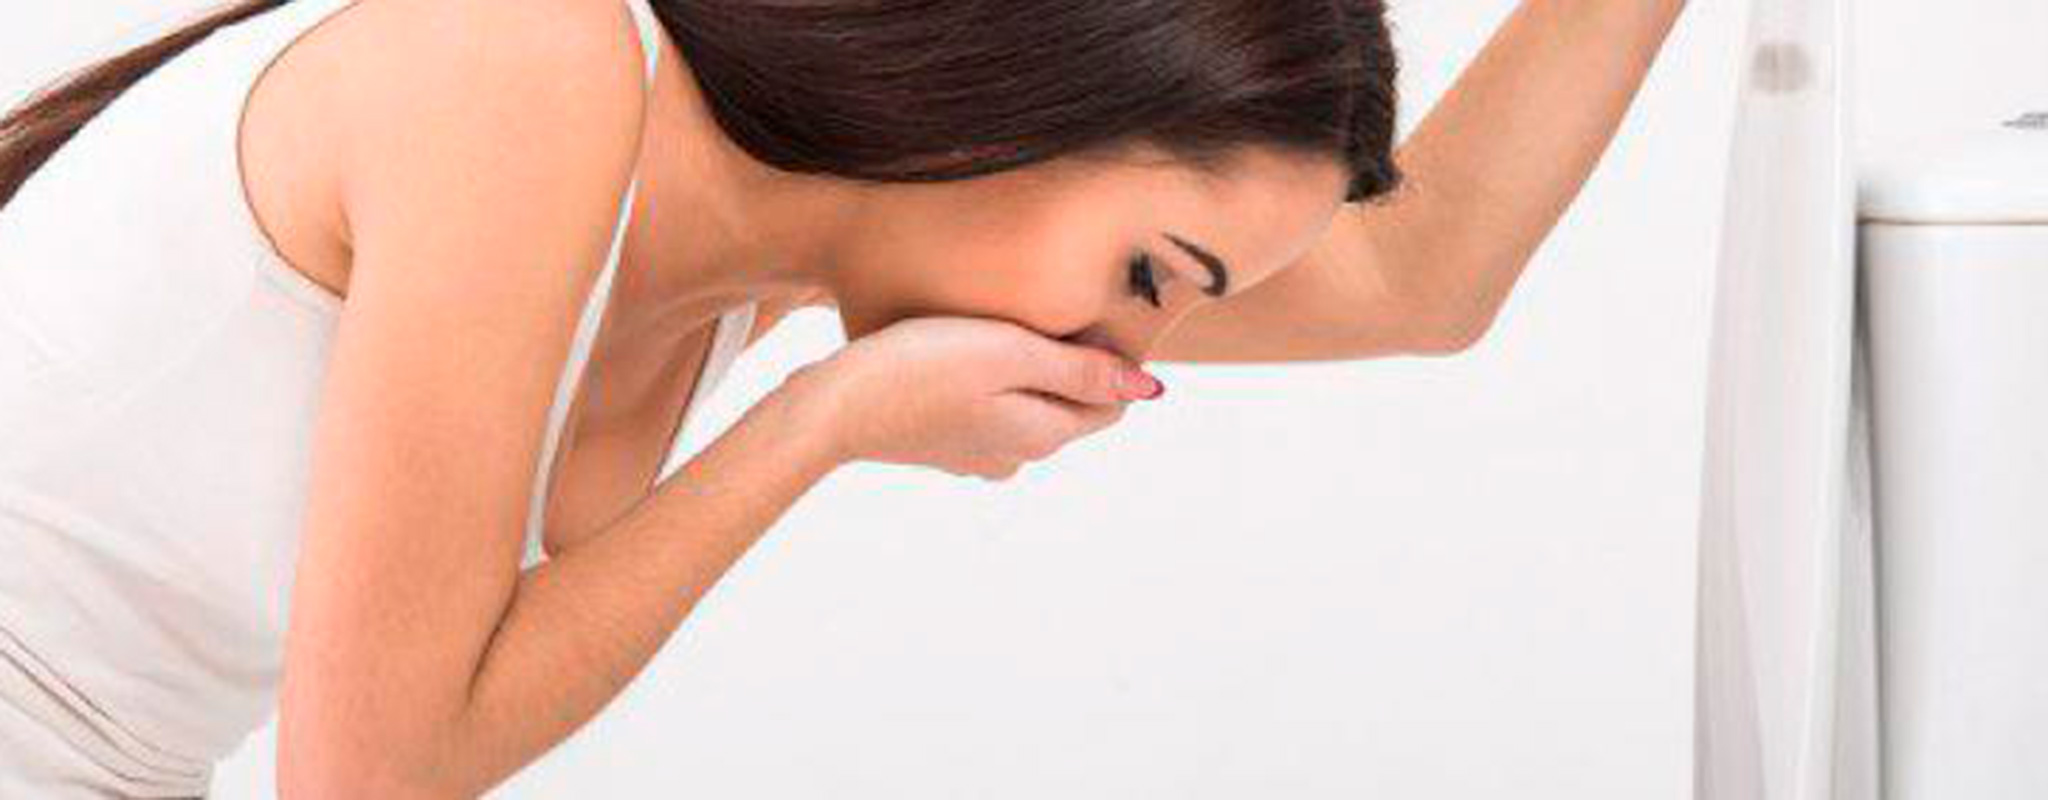 Palpitaciones en el vientre bajo: Causas y tratamiento - Belleza estética